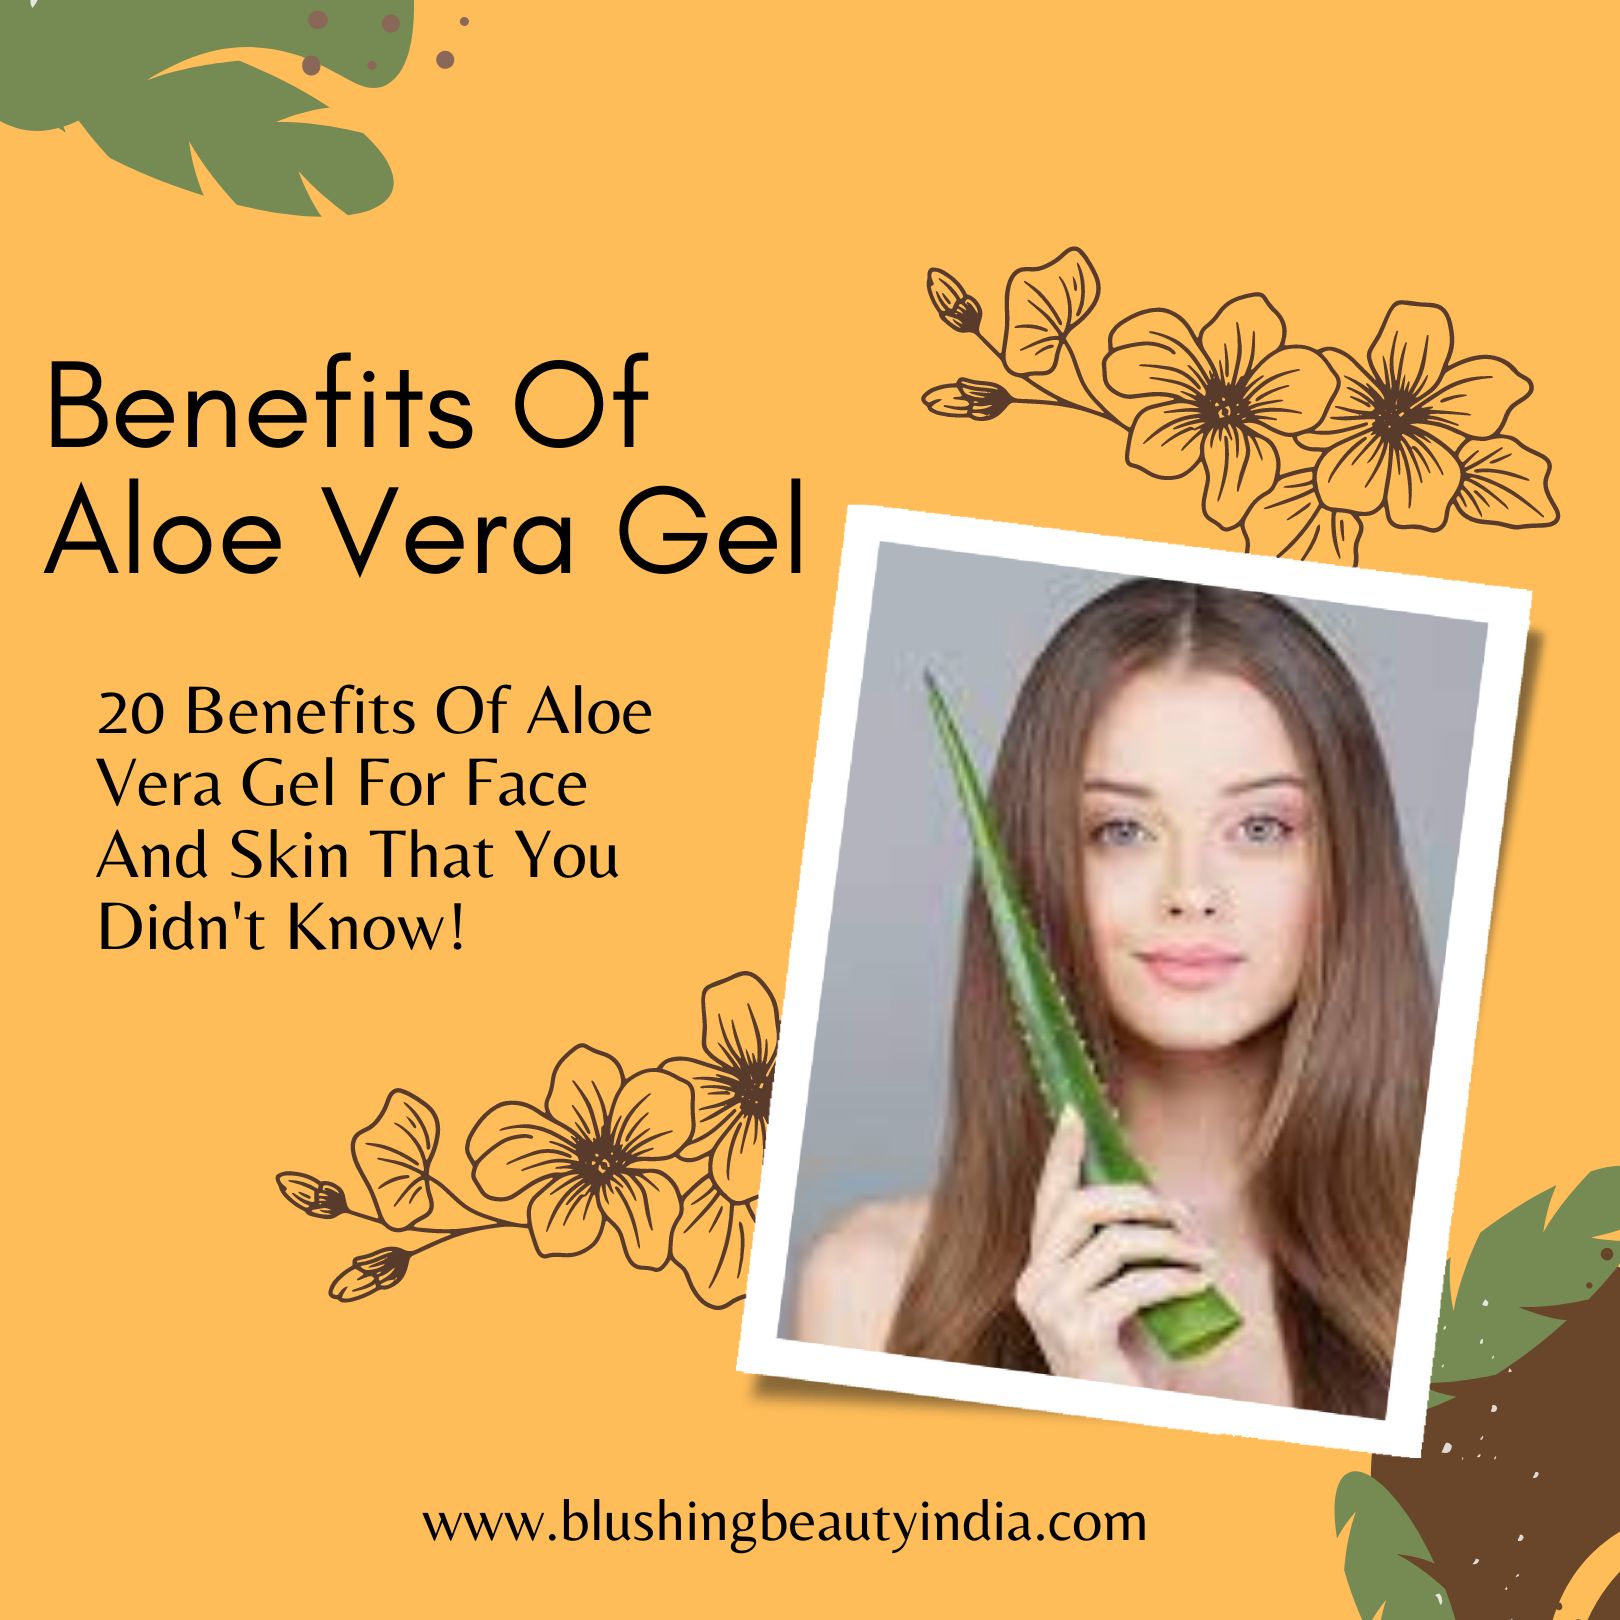 Benefits Of Aloe Vera Gel